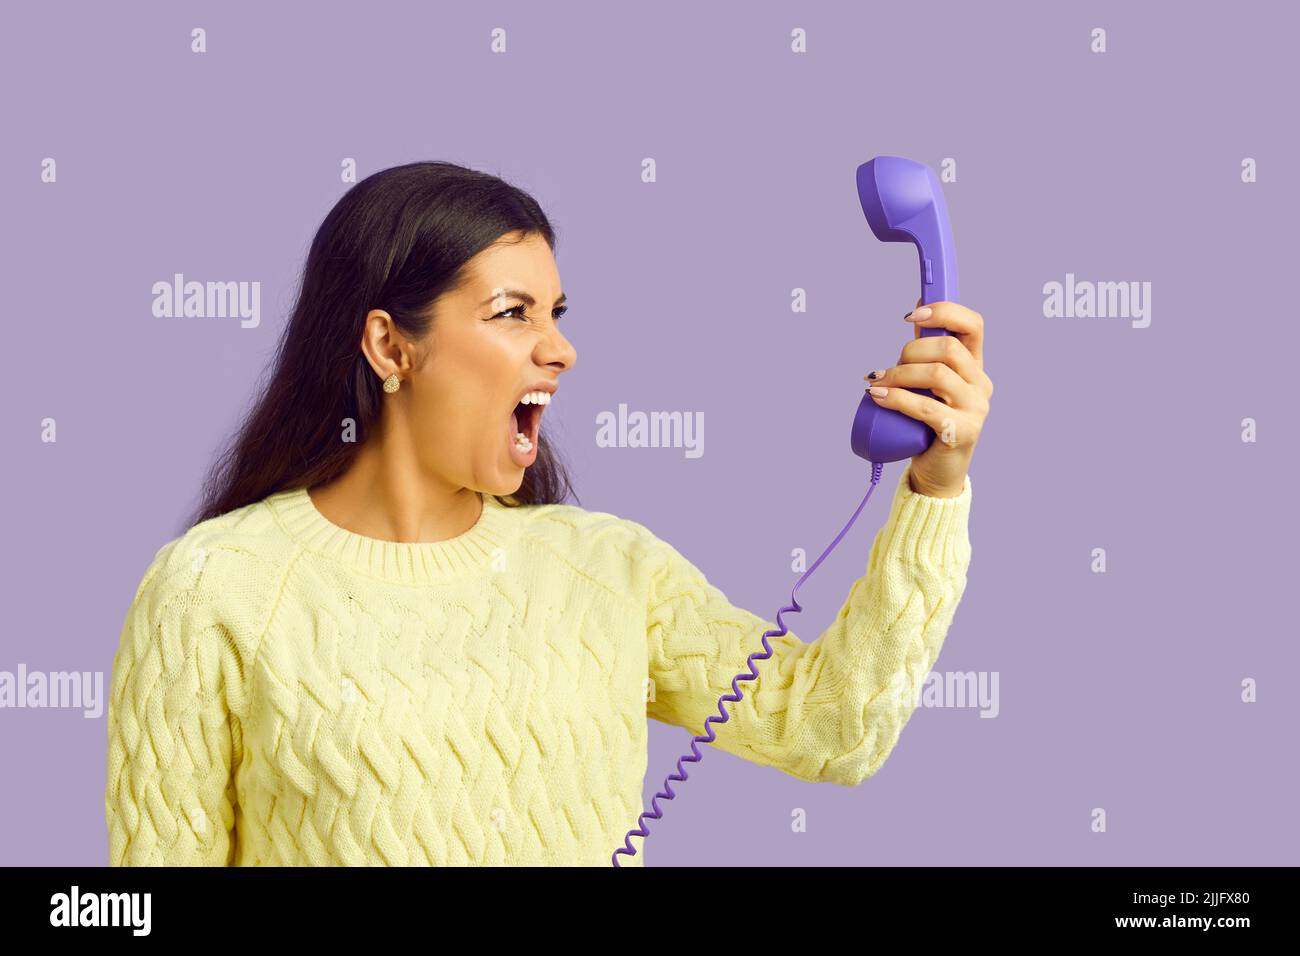 Junge Frau hält Festnetztelefon und schreit nervös über Anrufe mit lästiger Werbung Stockfoto